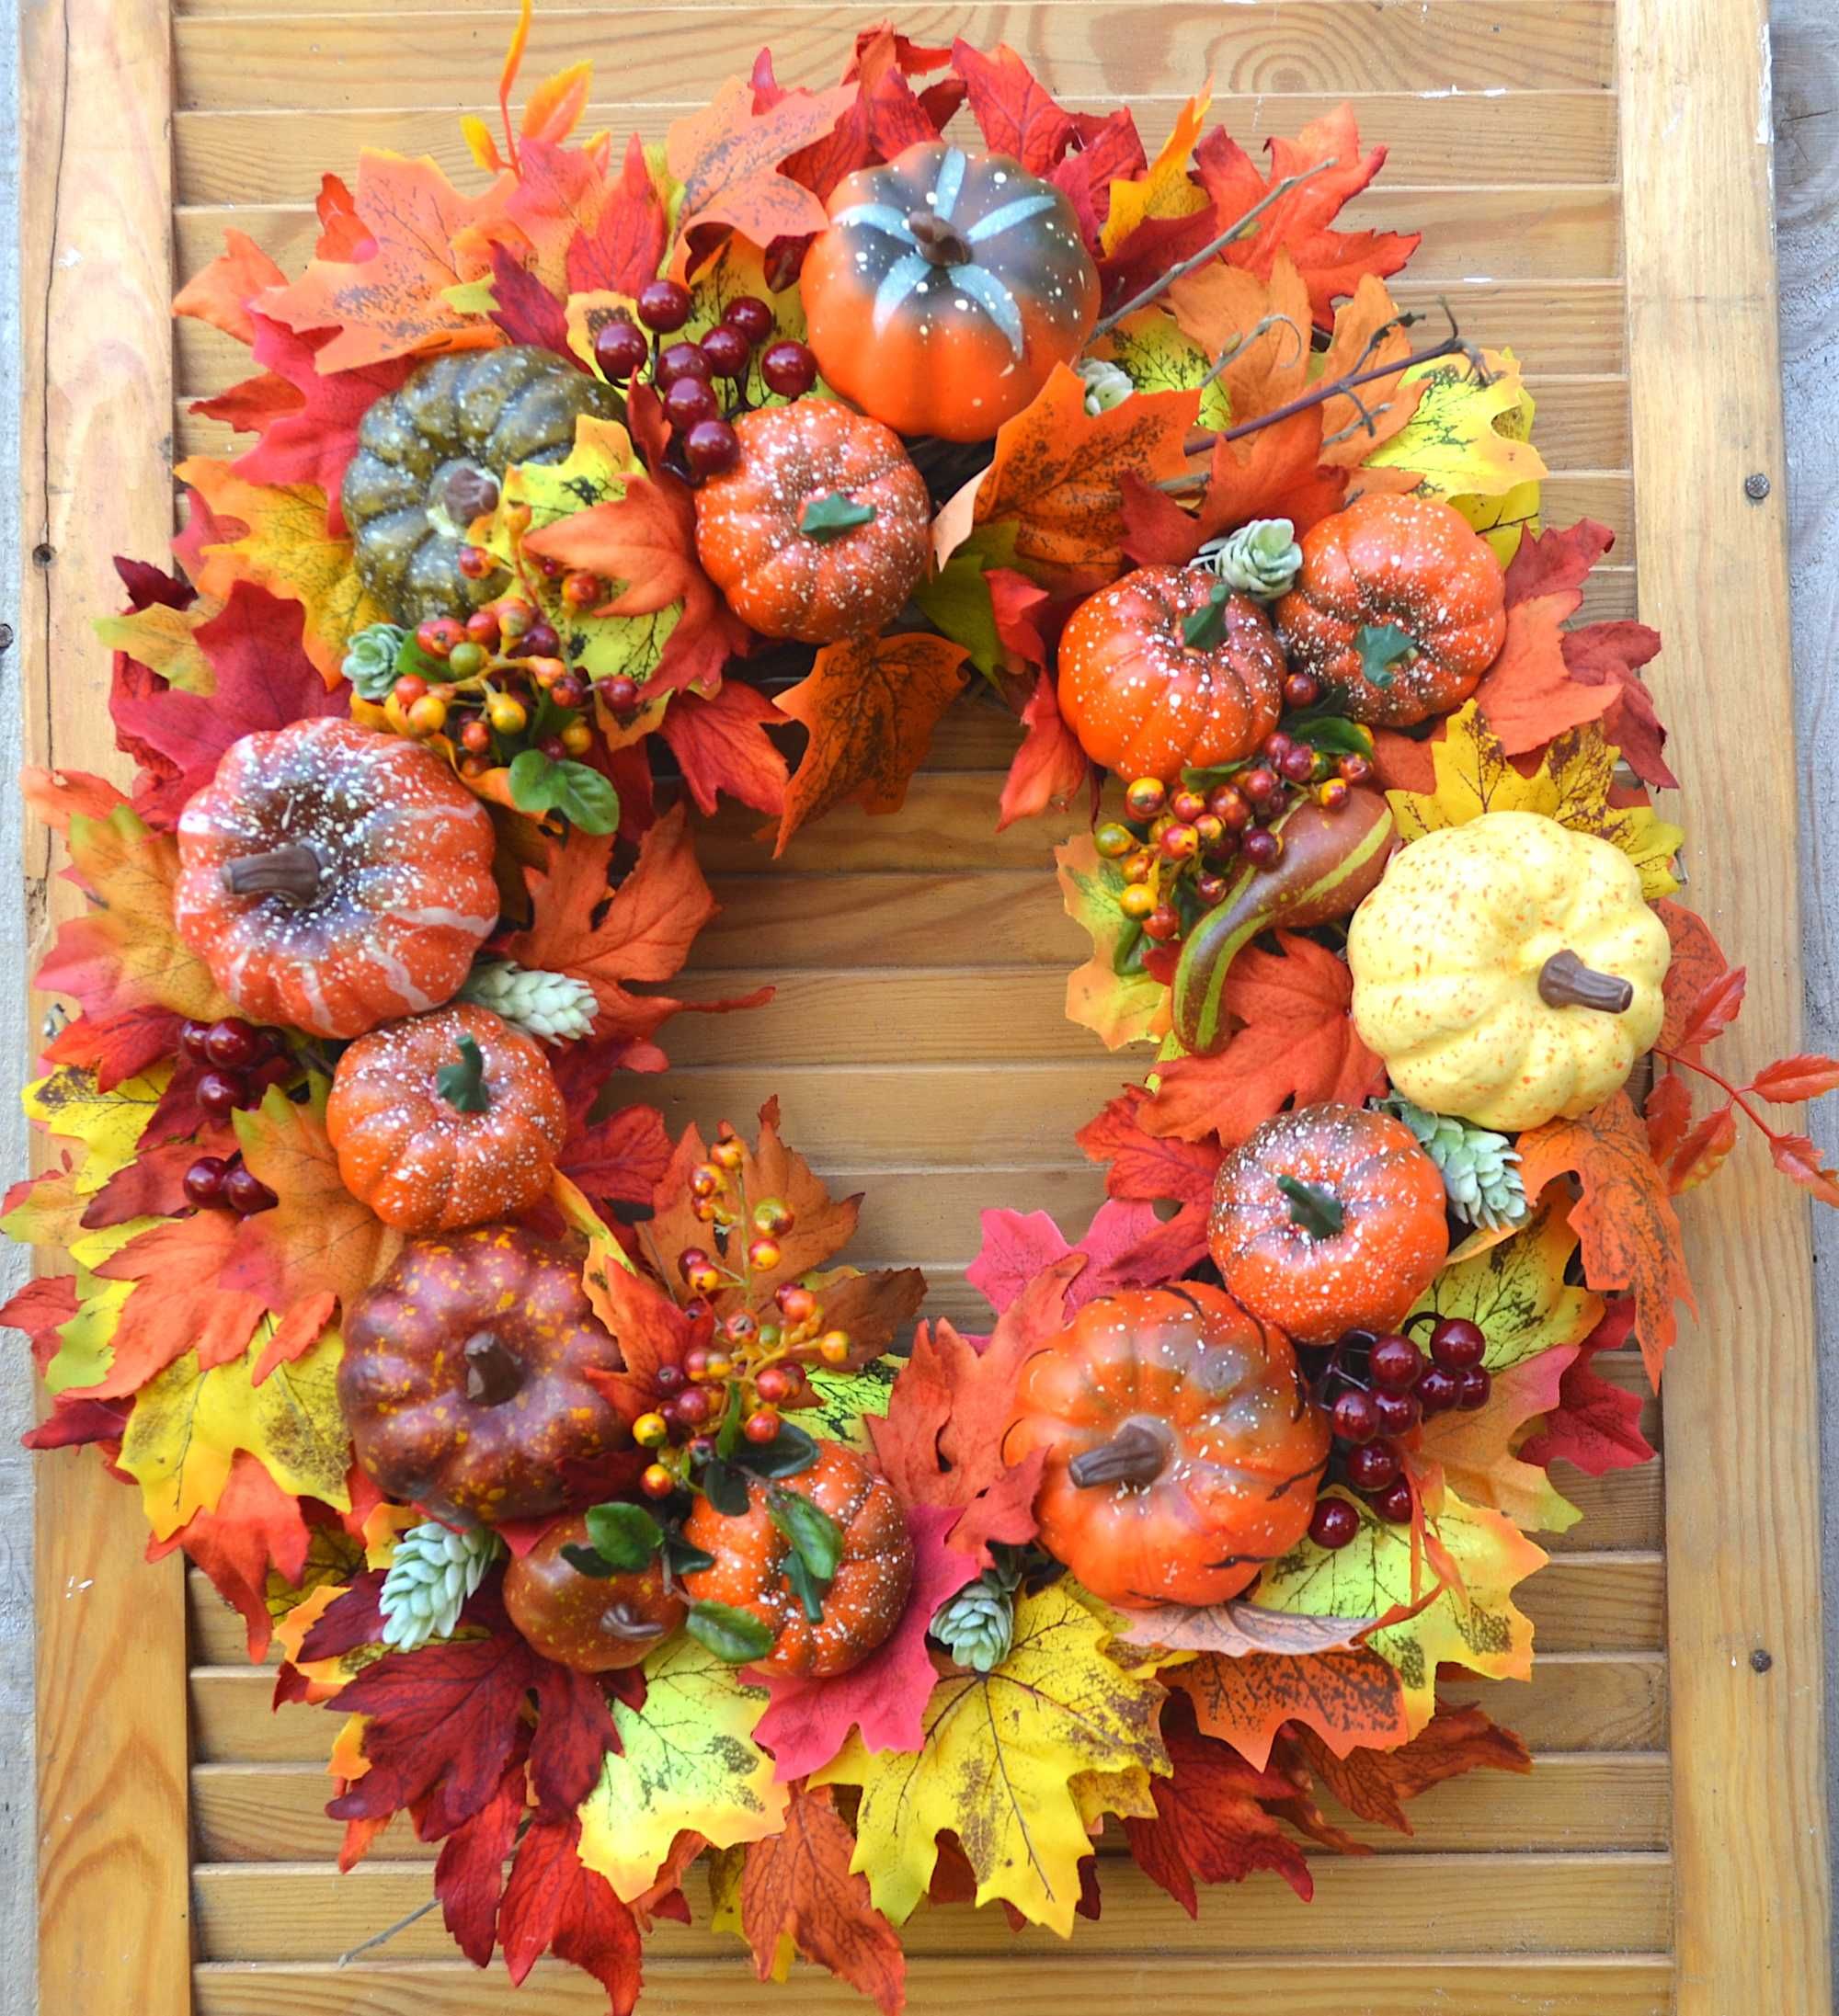 Осенний декор - венок на лозе,с гарбузами, листьями, хмелем, ягодами